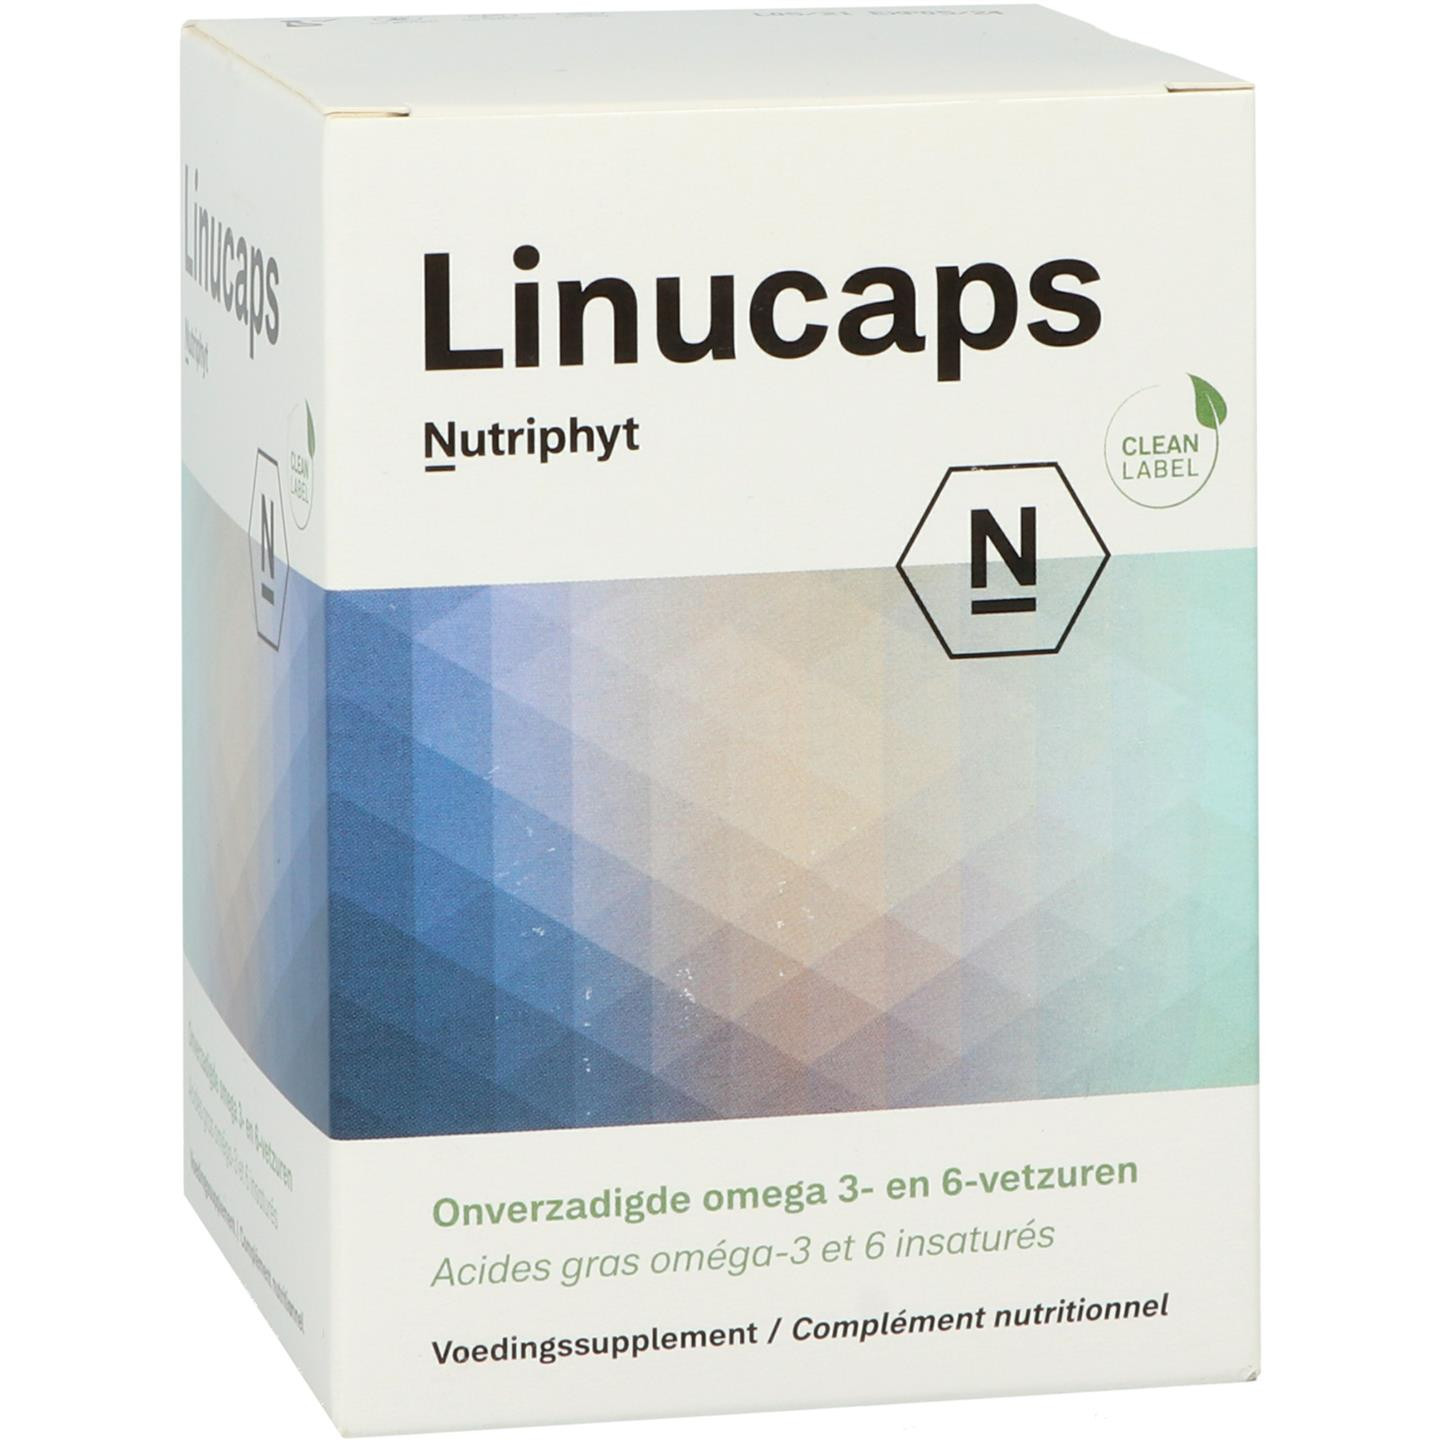 Linucaps